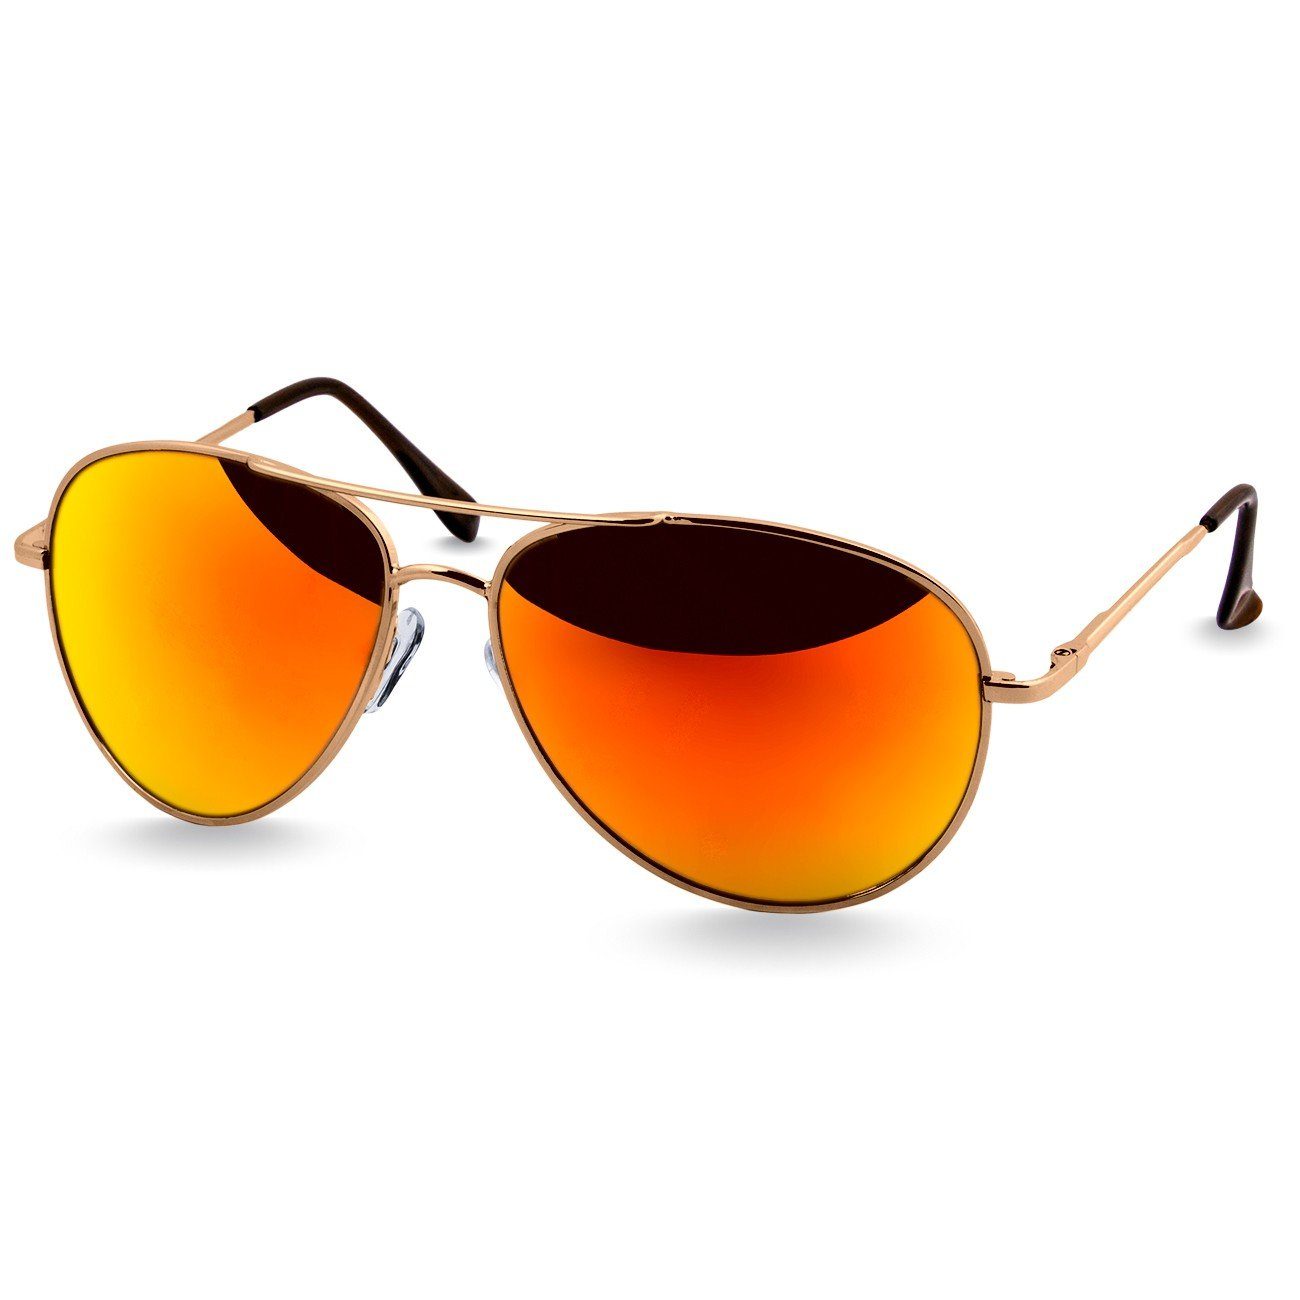 blau klassische schwarz verspiegelt Sonnenbrille Retro / Caspar SG013 Pilotenbrille Unisex